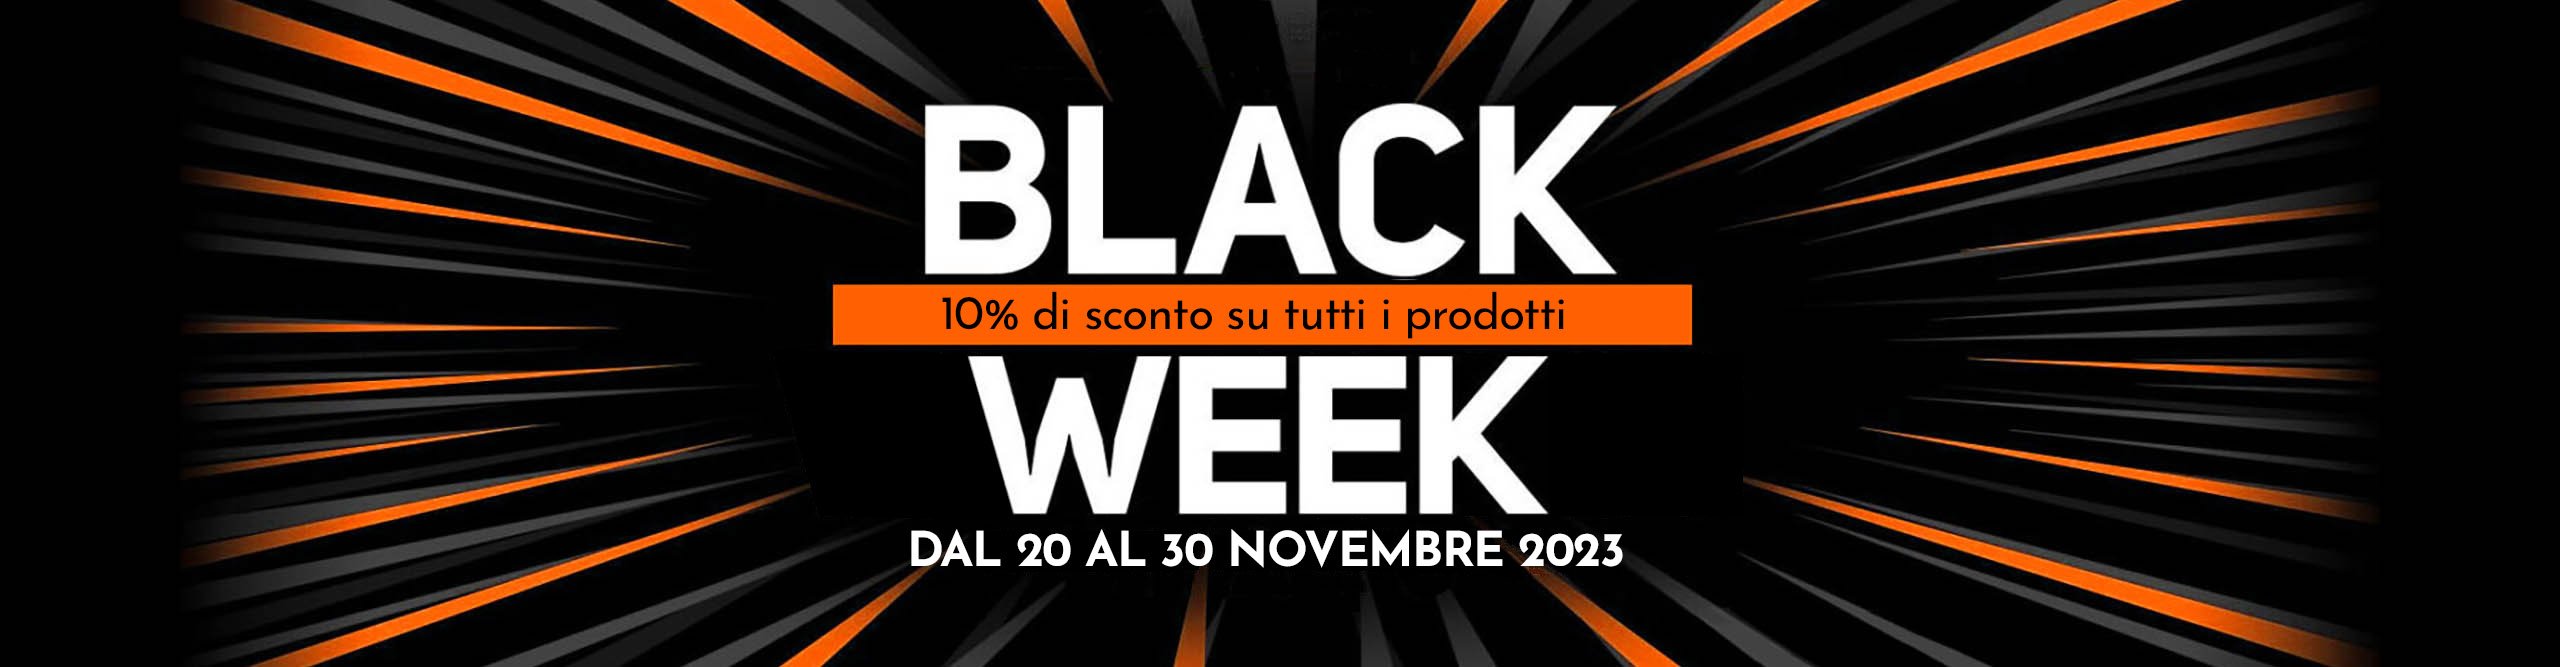 Promo Black Week